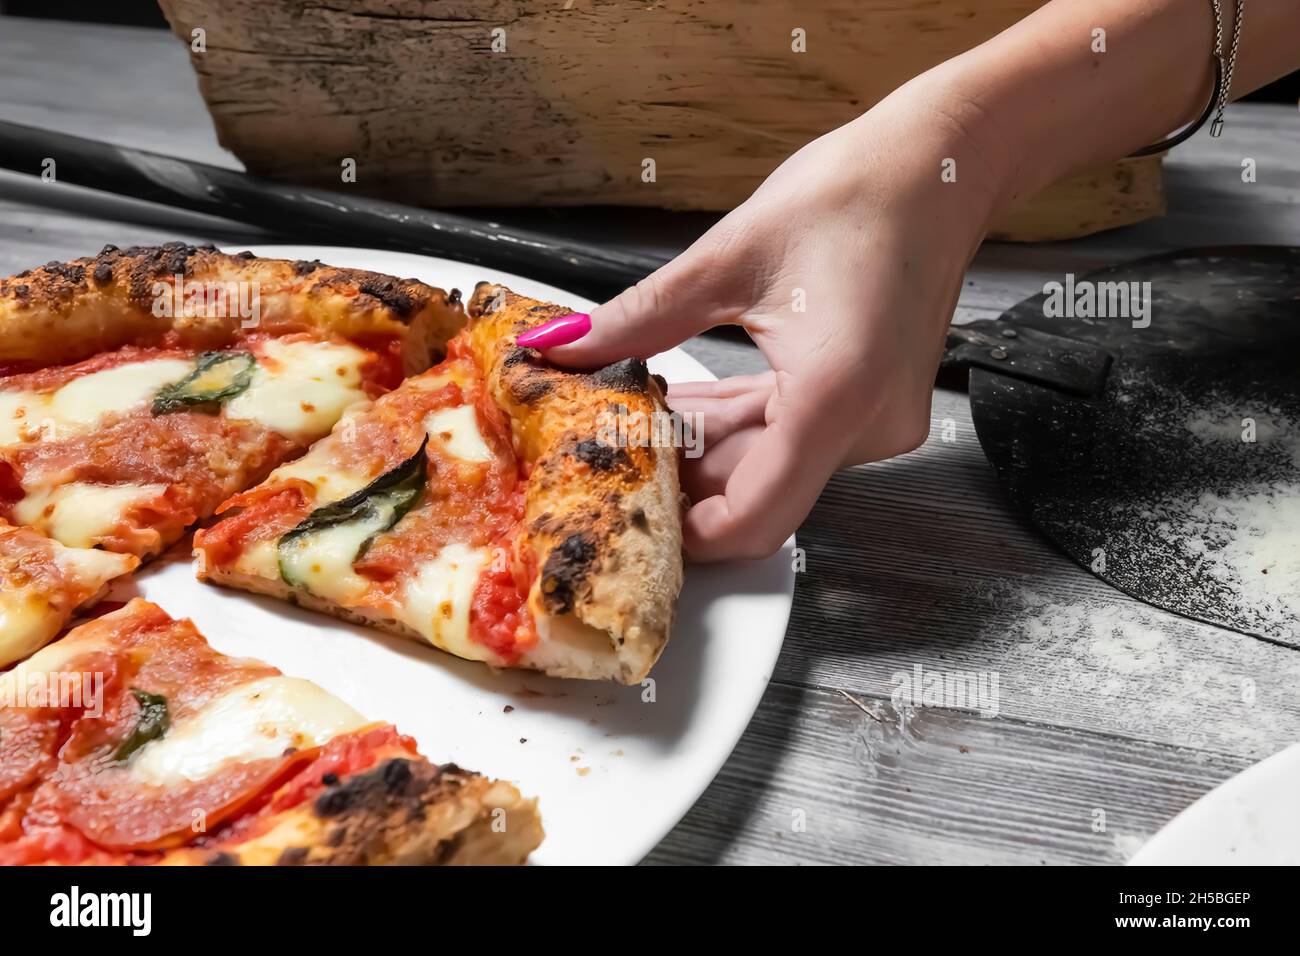 Pizze cotte al forno immagini e fotografie stock ad alta risoluzione - Alamy